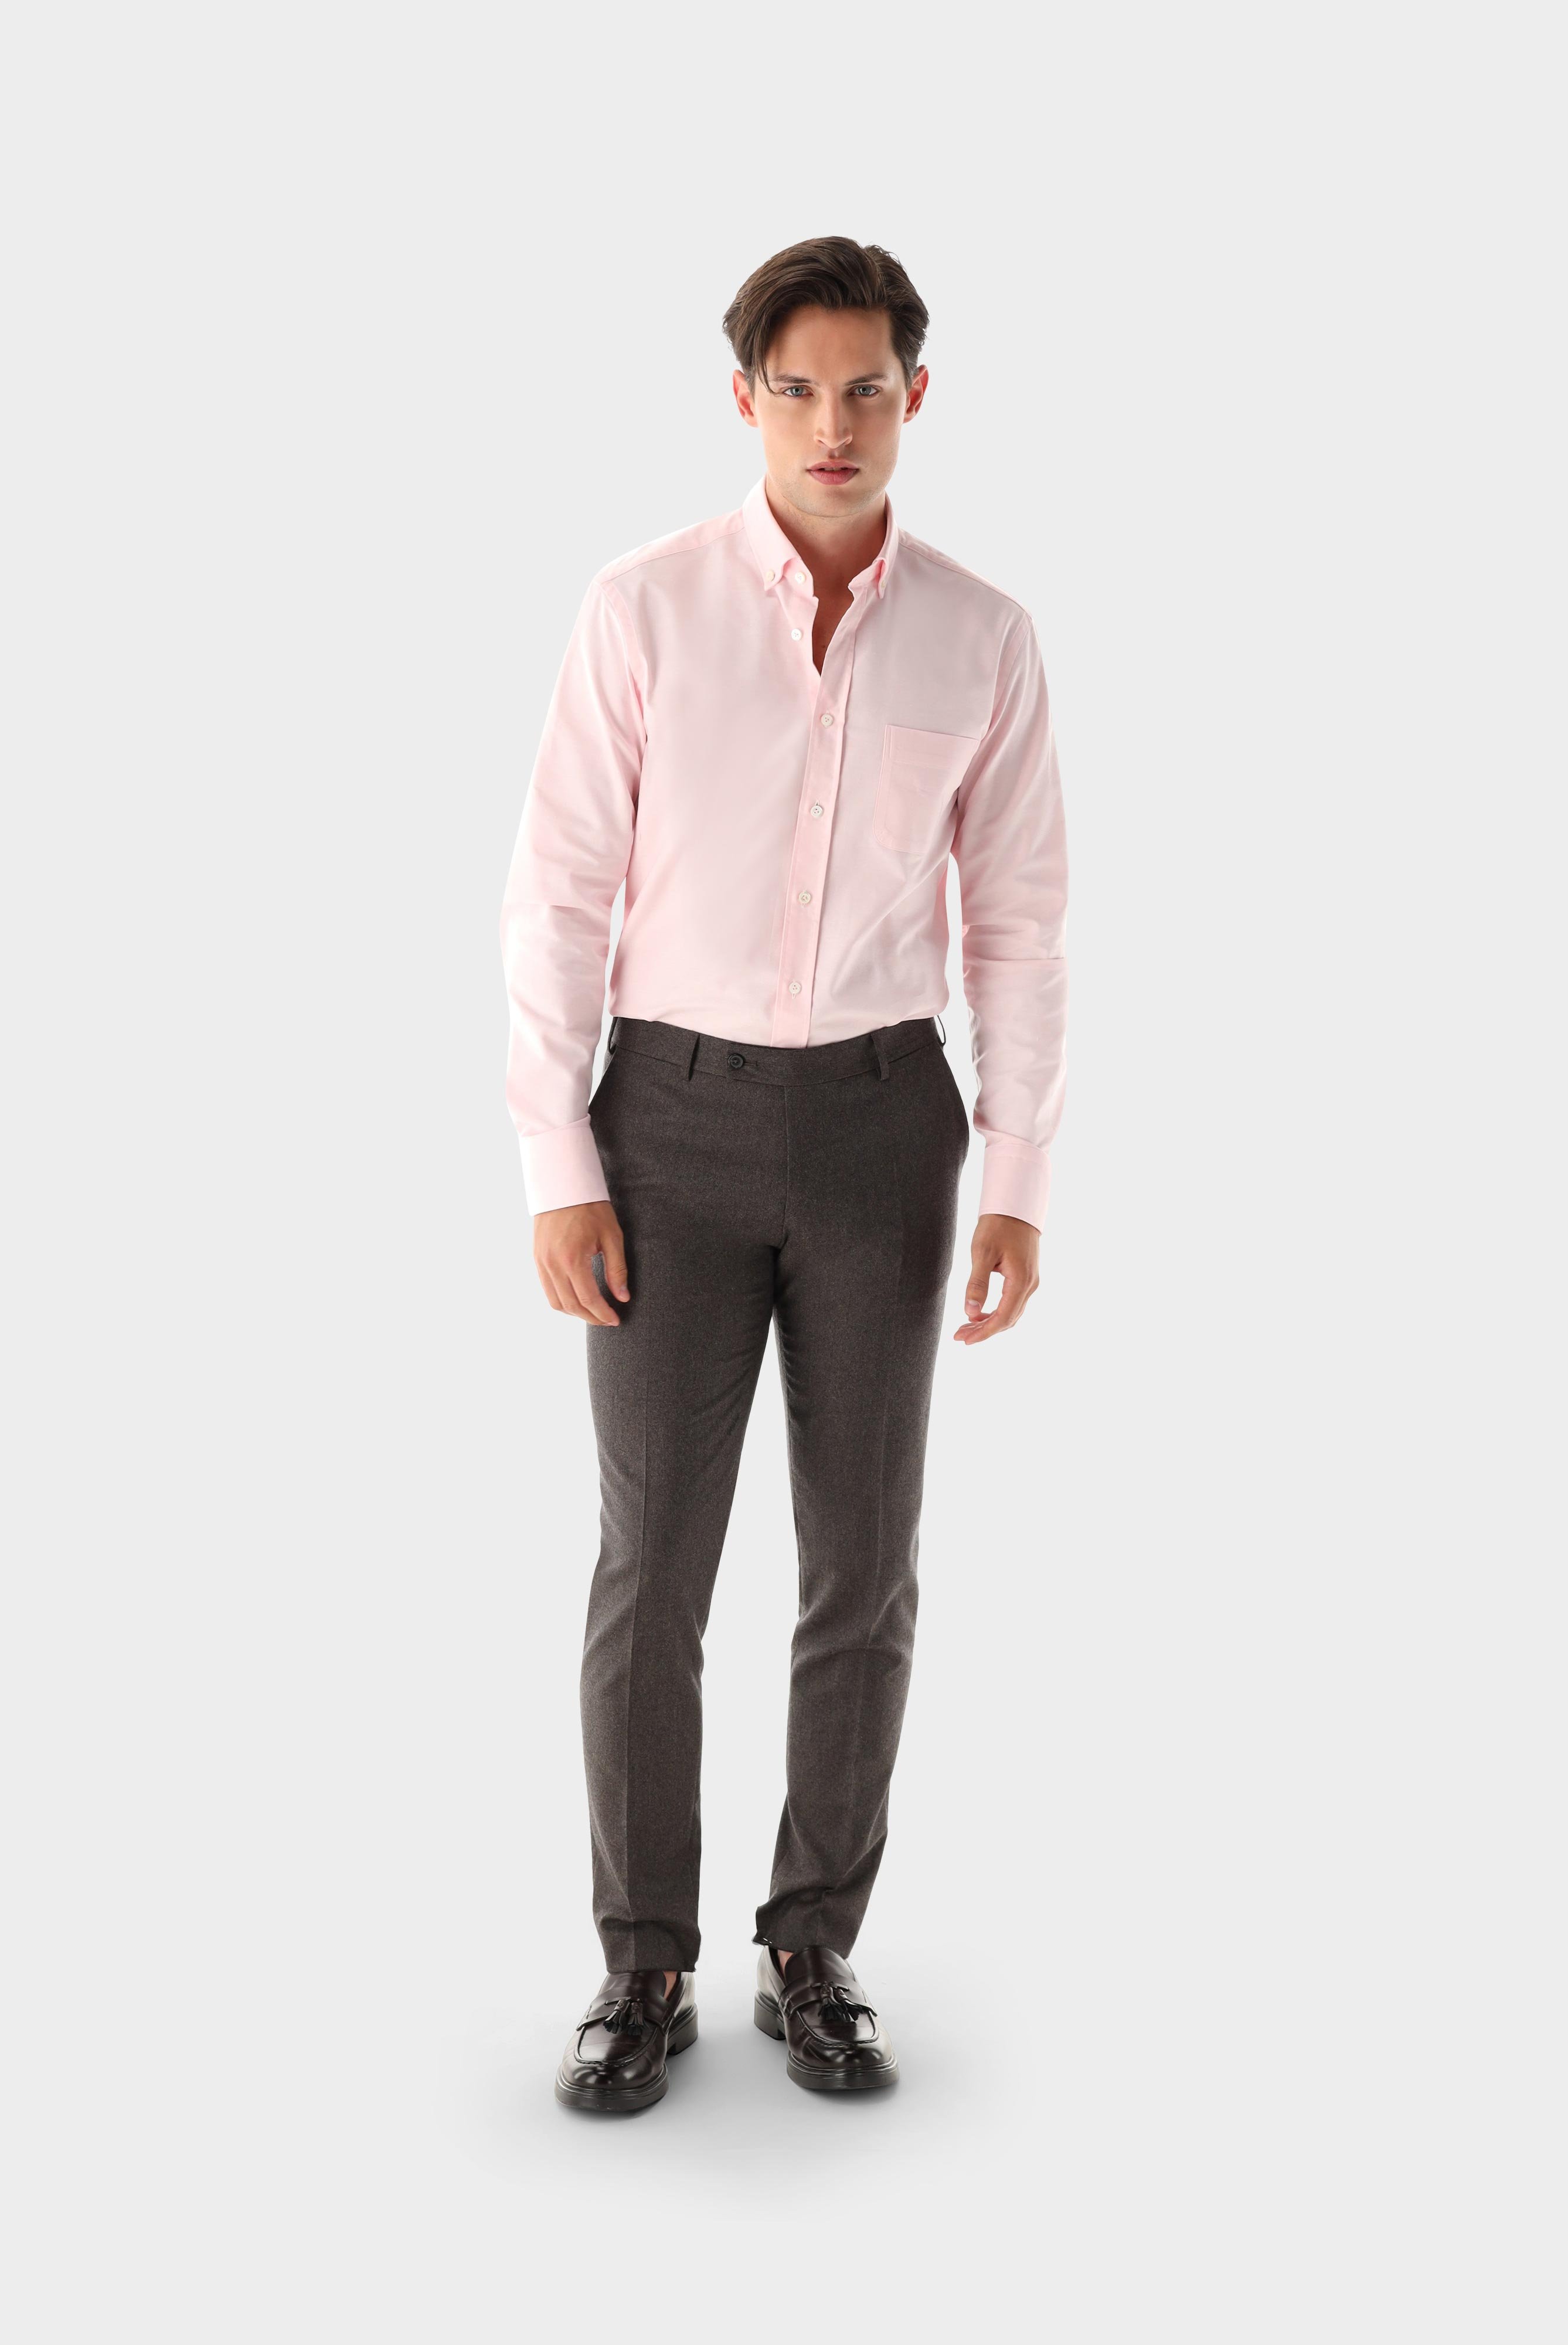 Casual Hemden+Oxfordhemd Tailor Fit+20.2013.AV.161267.530.37